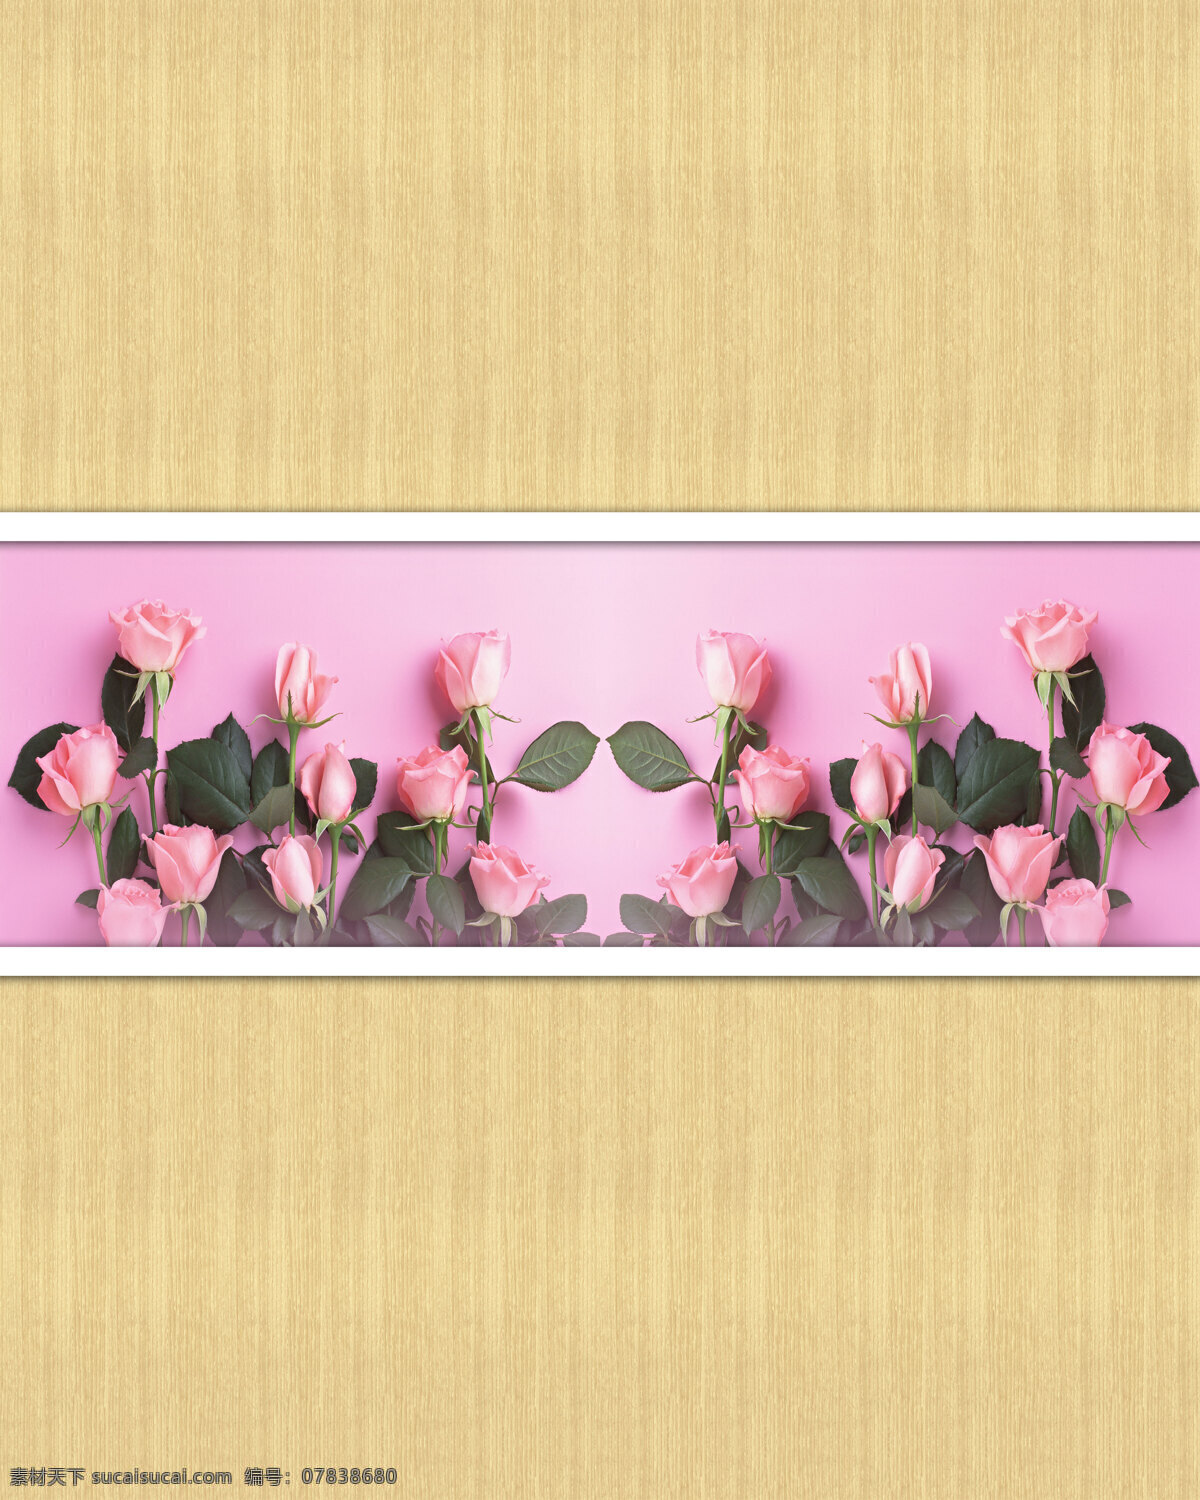 木纹 系列 两门图 木板 纹理 花纹 花 玫瑰花 家居装饰素材 移门